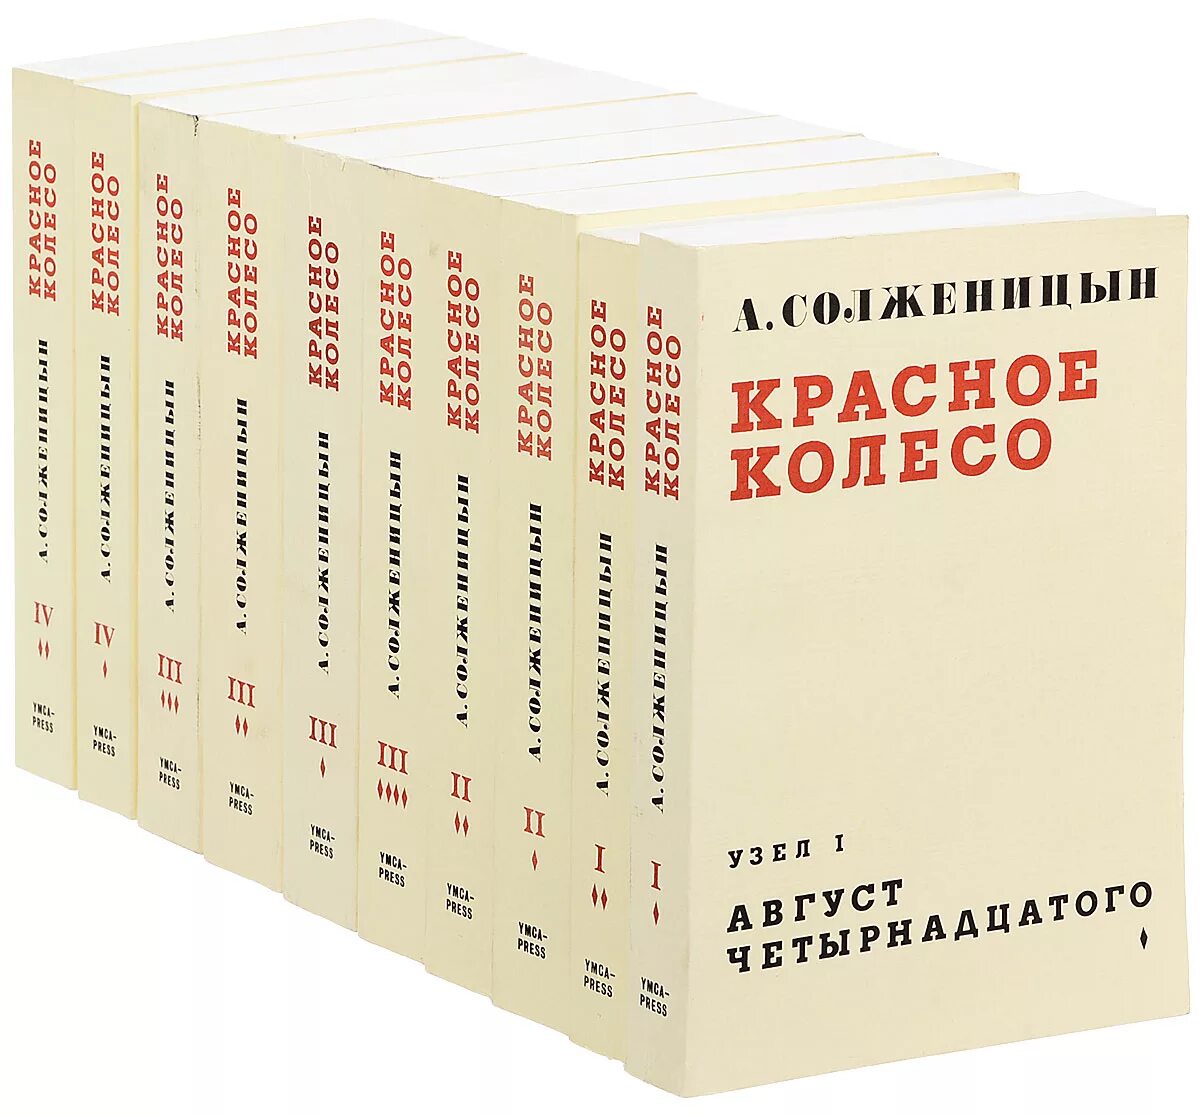 Солженицын книга красное колесо